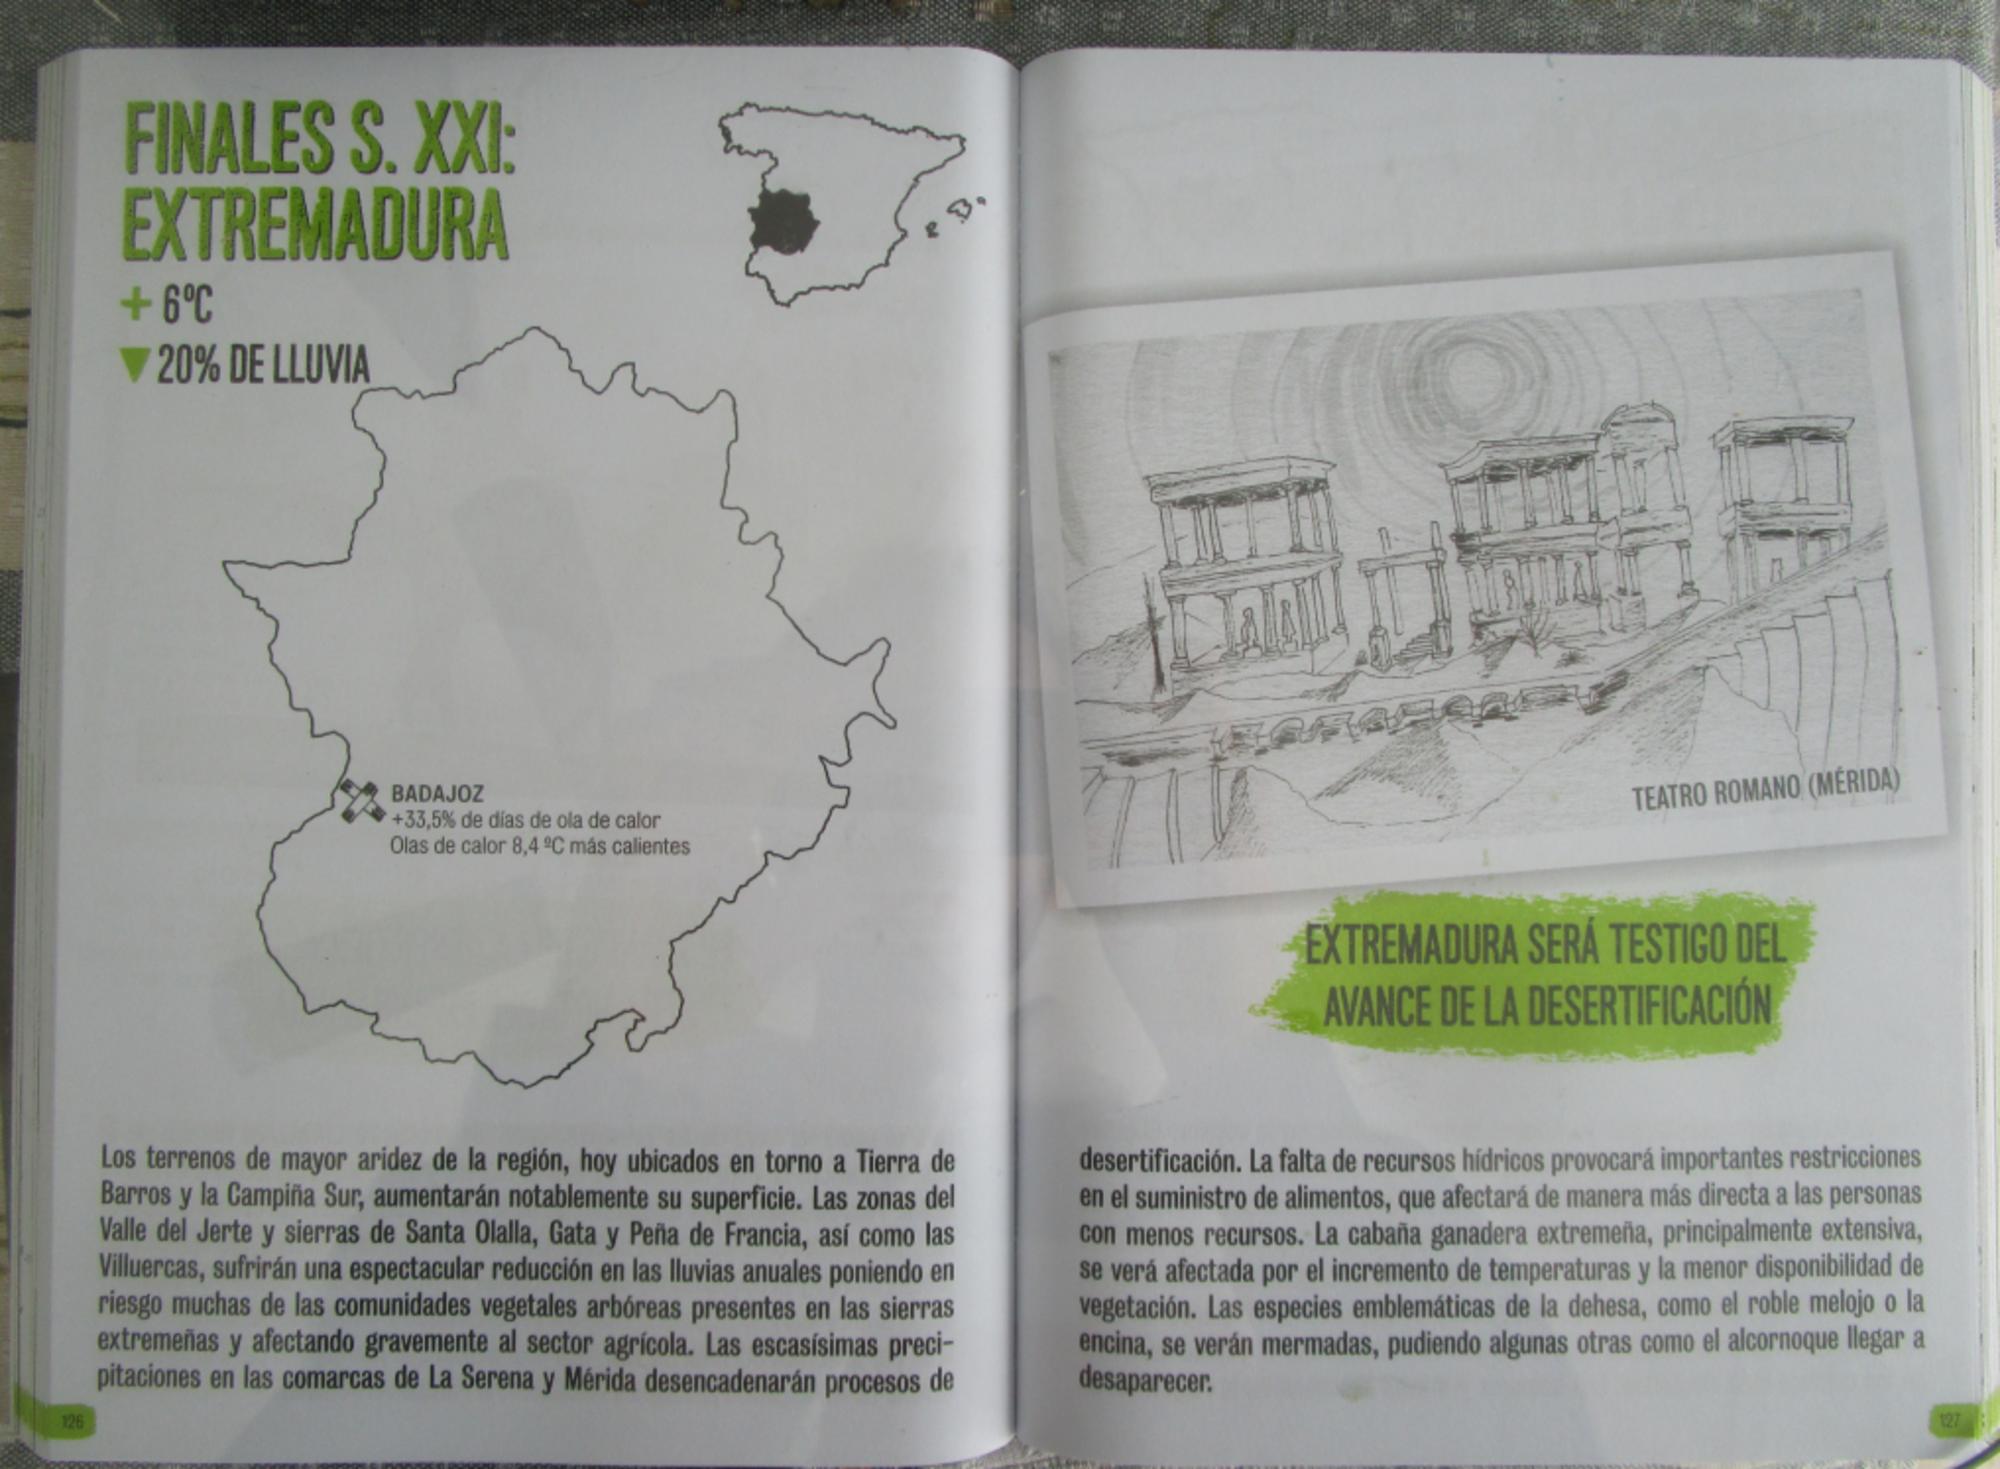  Manual de lucha contra el cambio climático, Extremadura